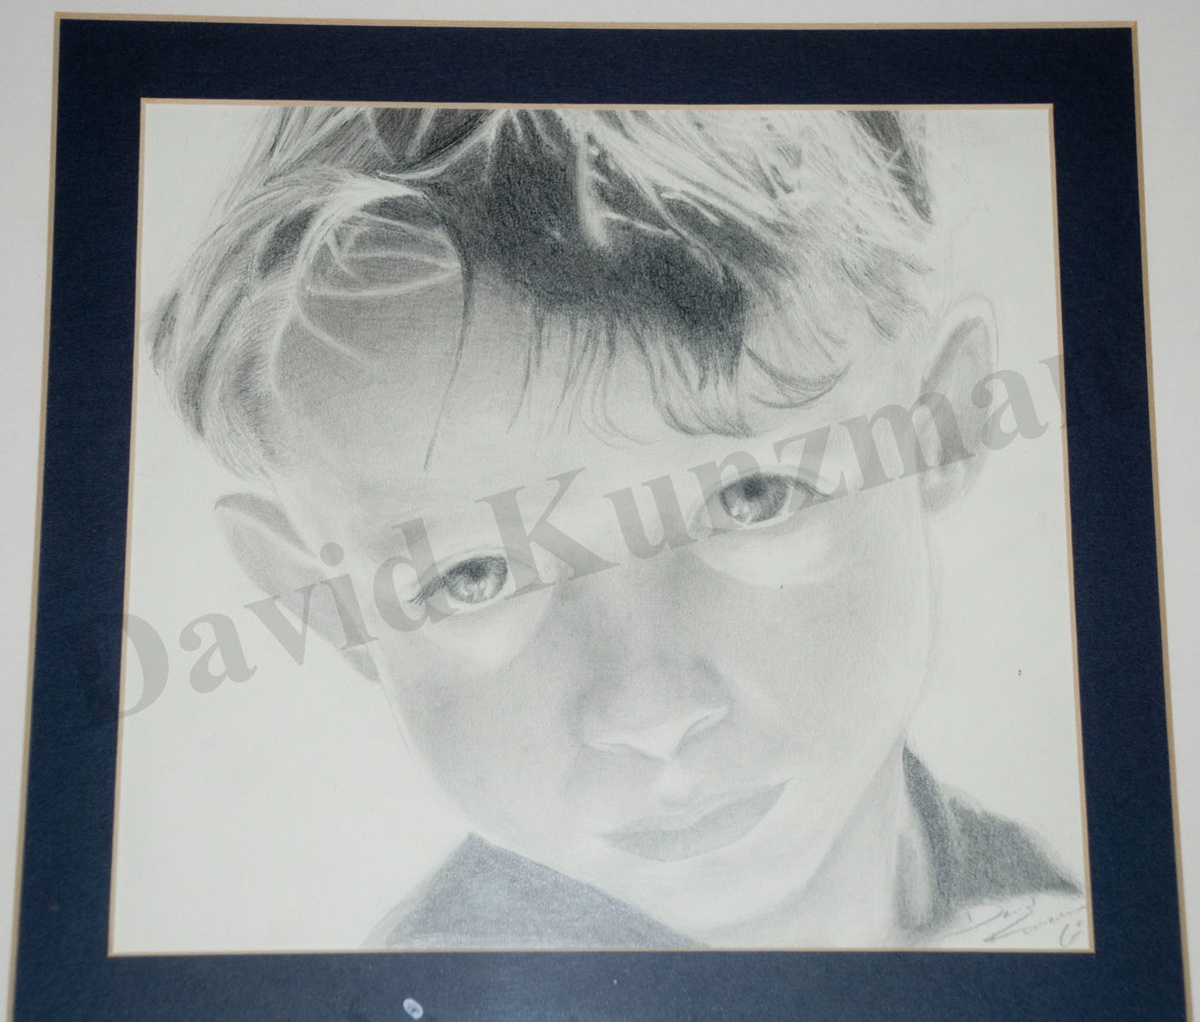 A portrait of a boy drawn using pencils.